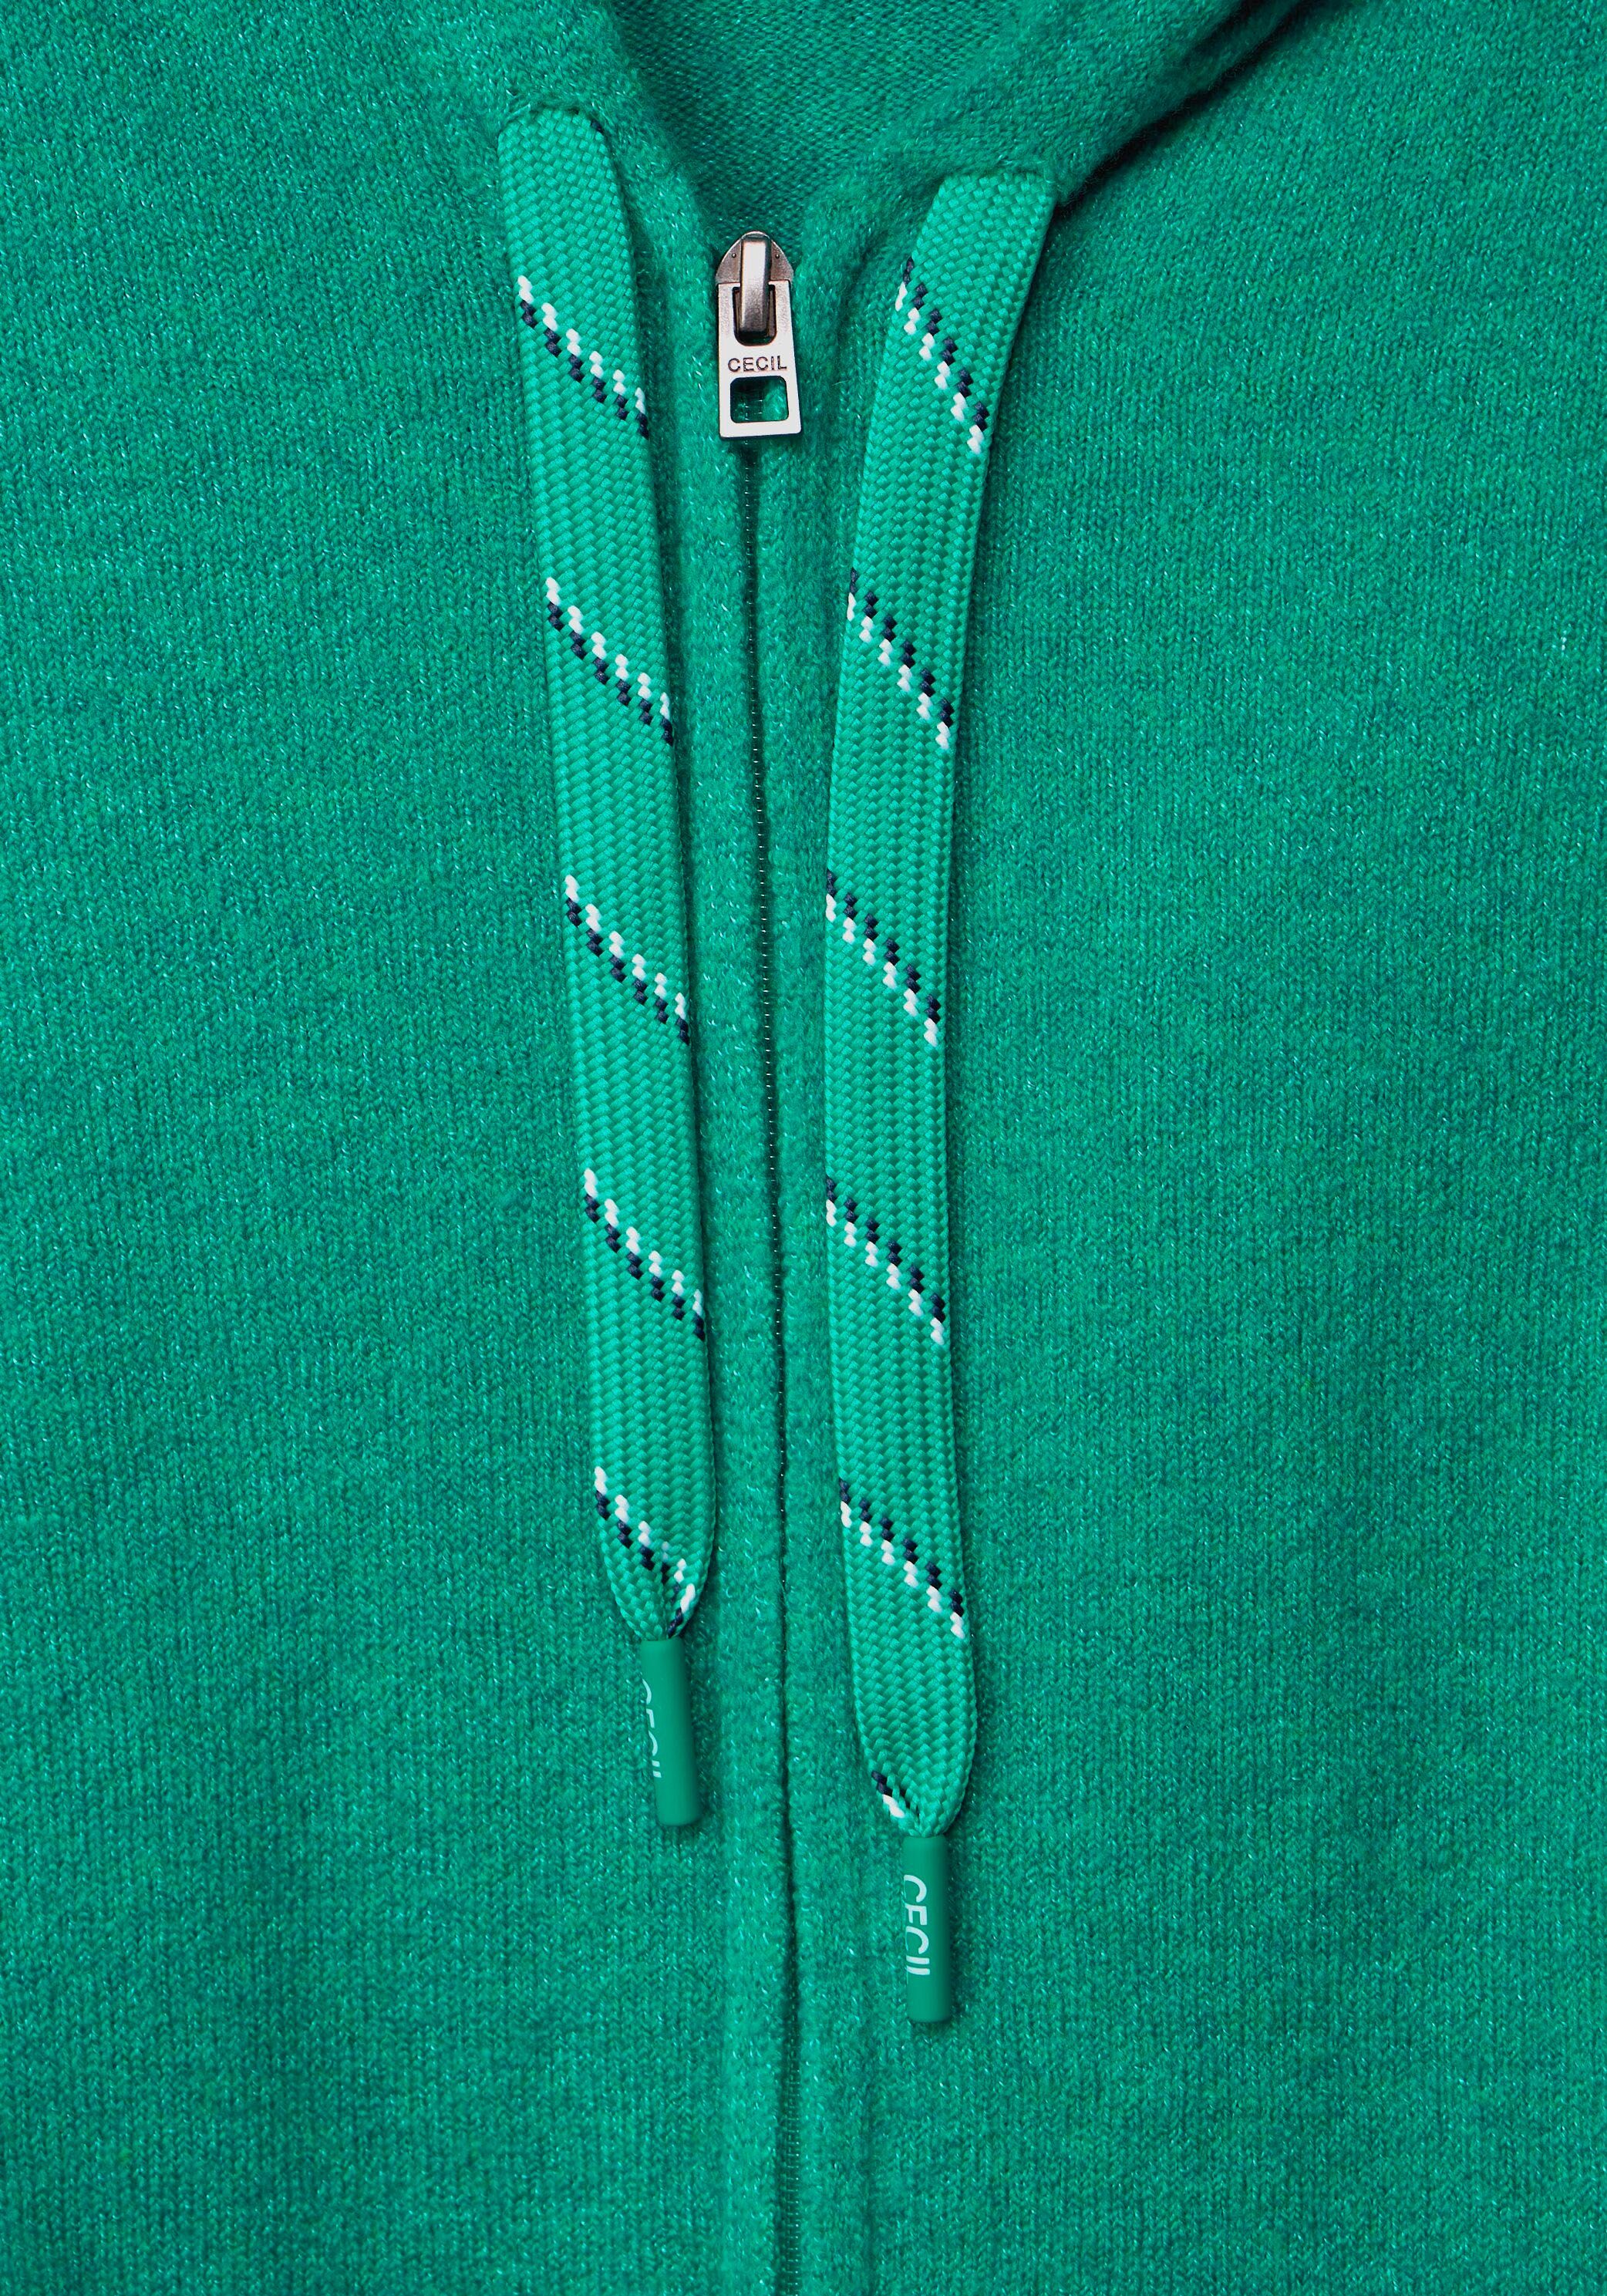 Strickjacke Cardigan und melange mit Reißverschluss Kapuze smaragd Cecil green Zip Cosy